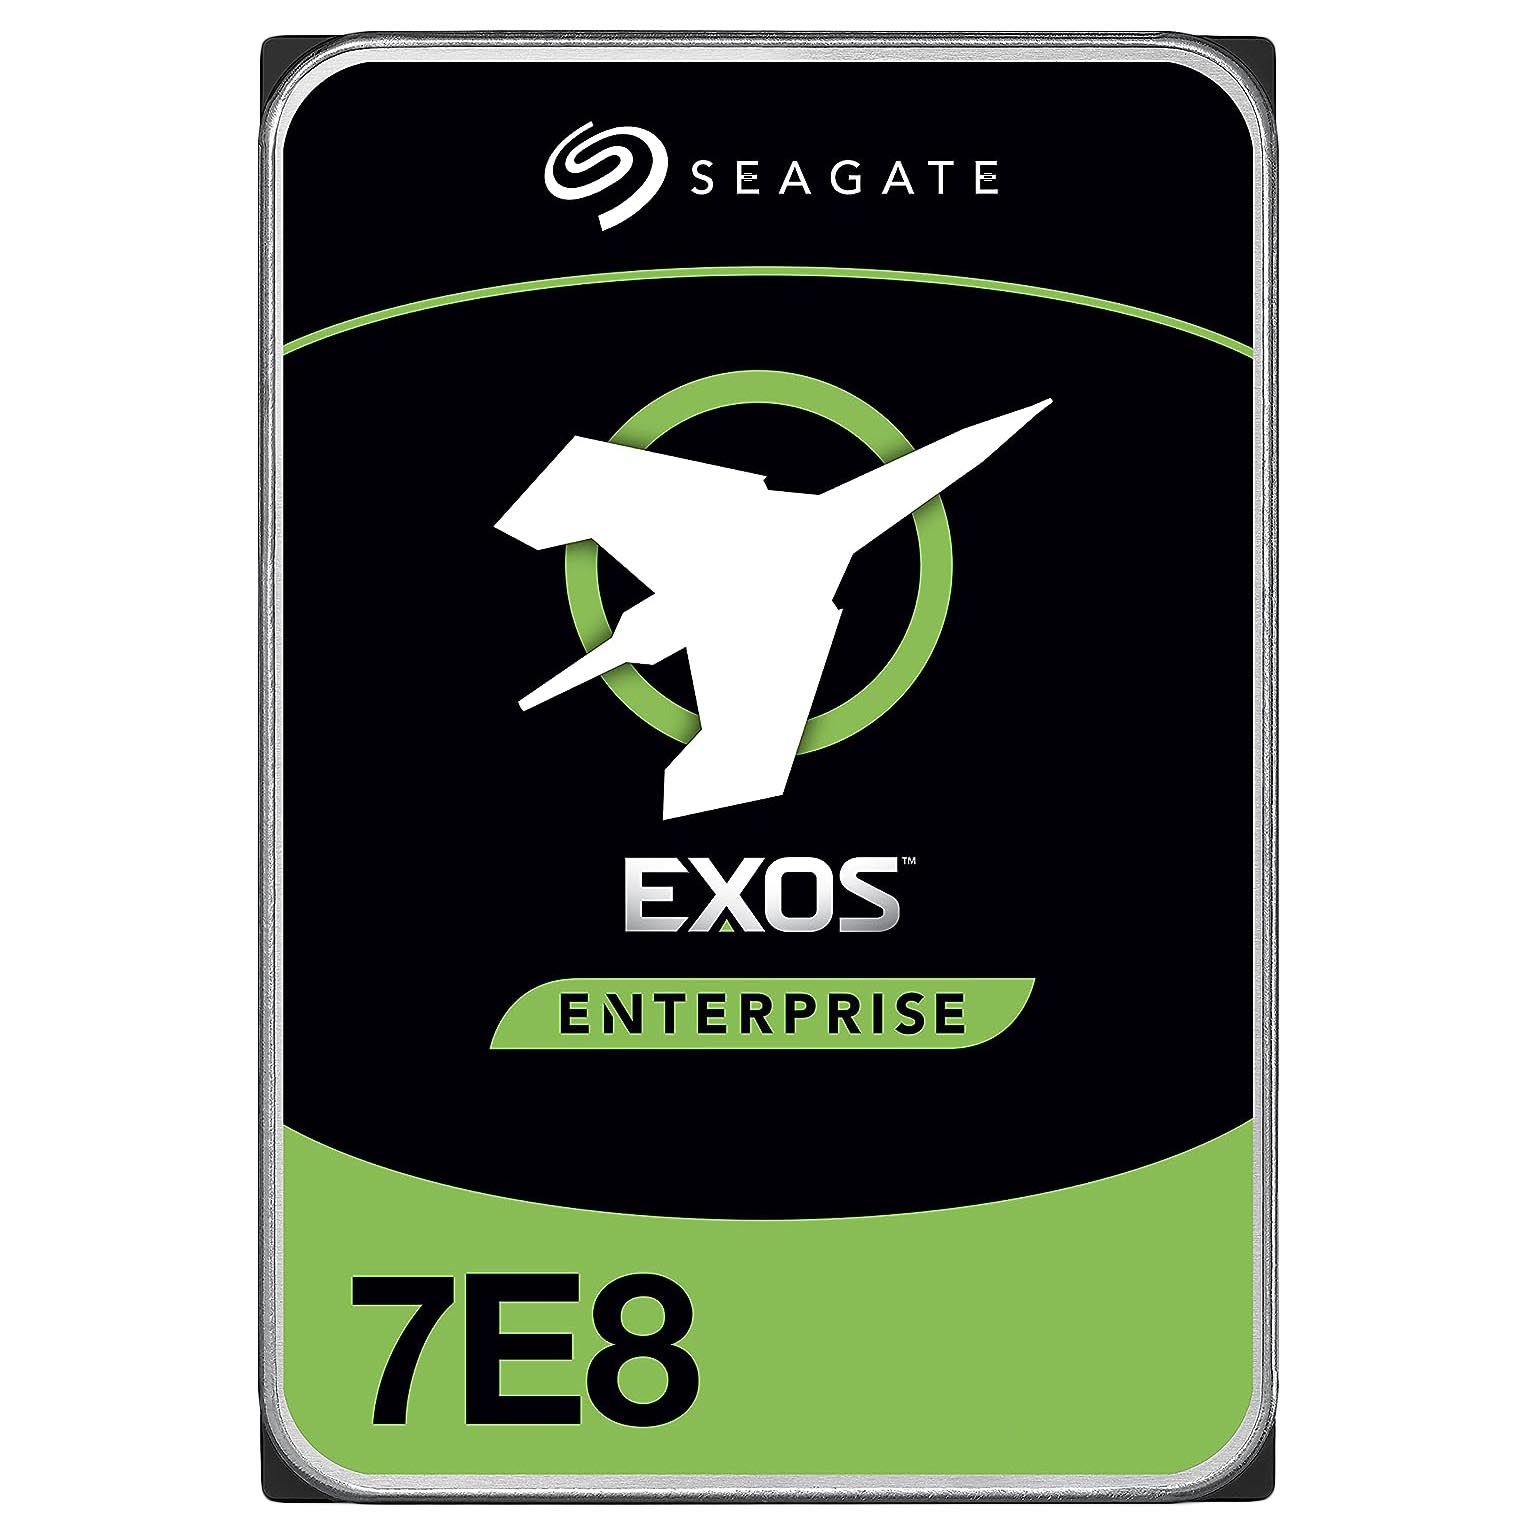 цена Внутренний жесткий диск Seagate Exos 7E8 512n, ST4000NM0035, 4 Тб